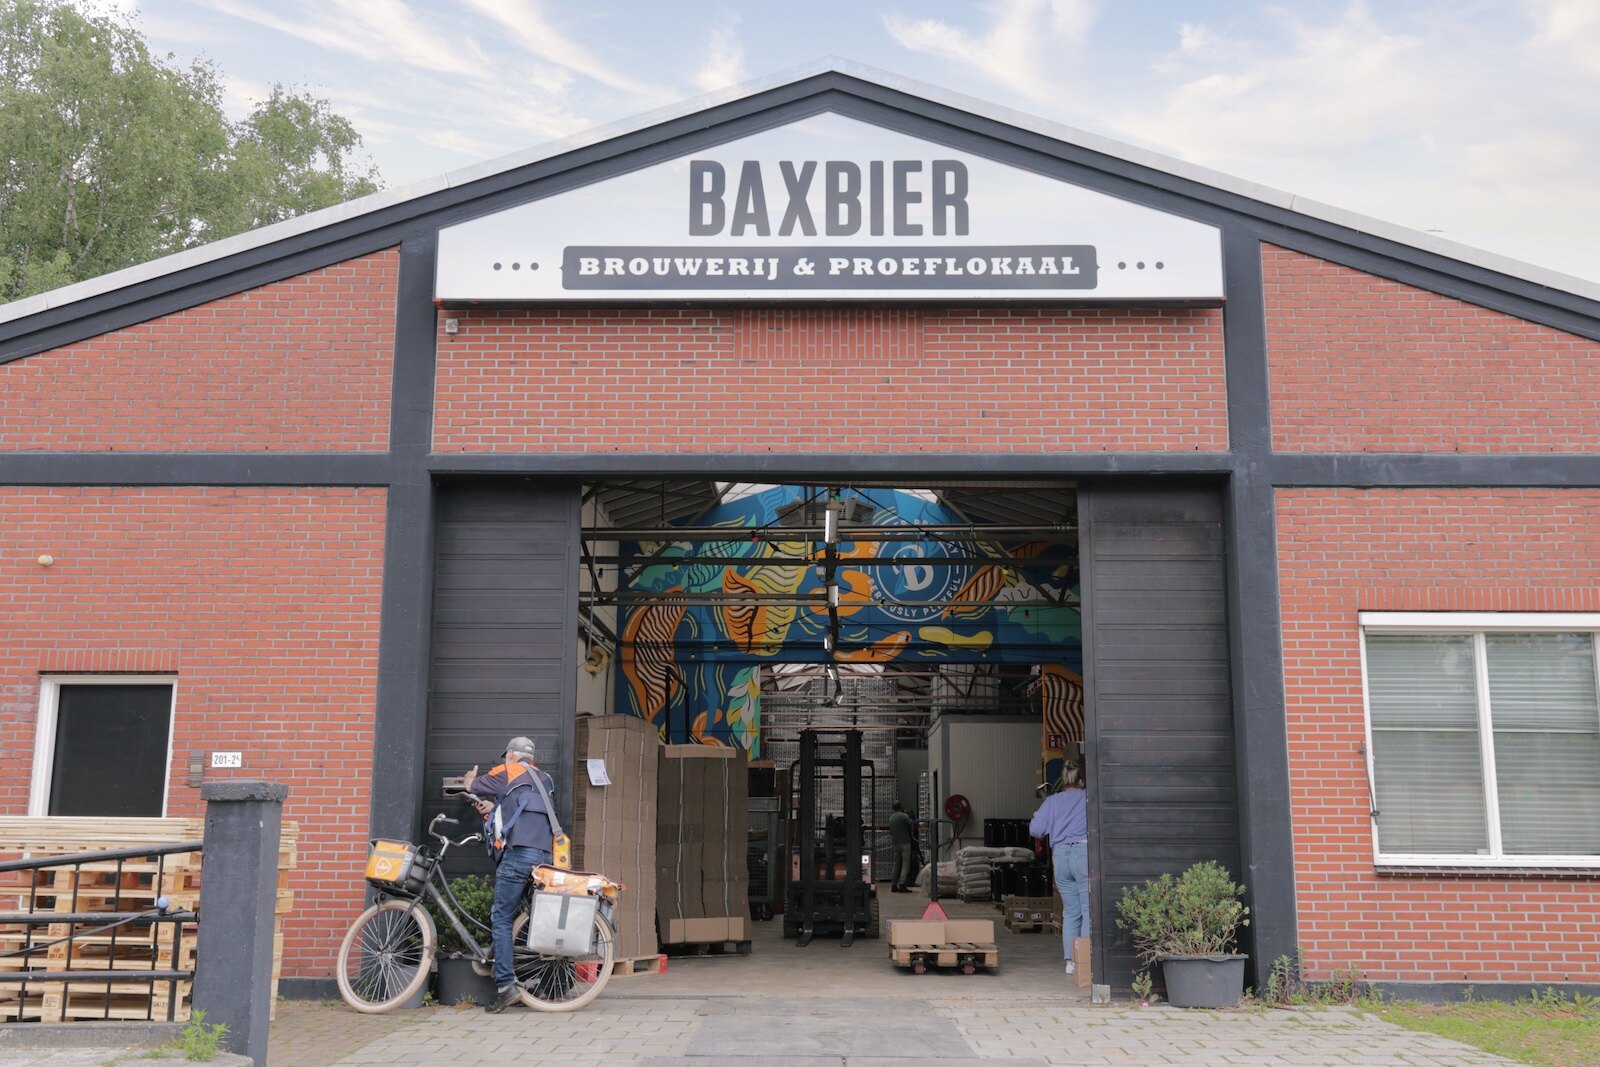 Entrance of Baxbier Brewery in Groningen